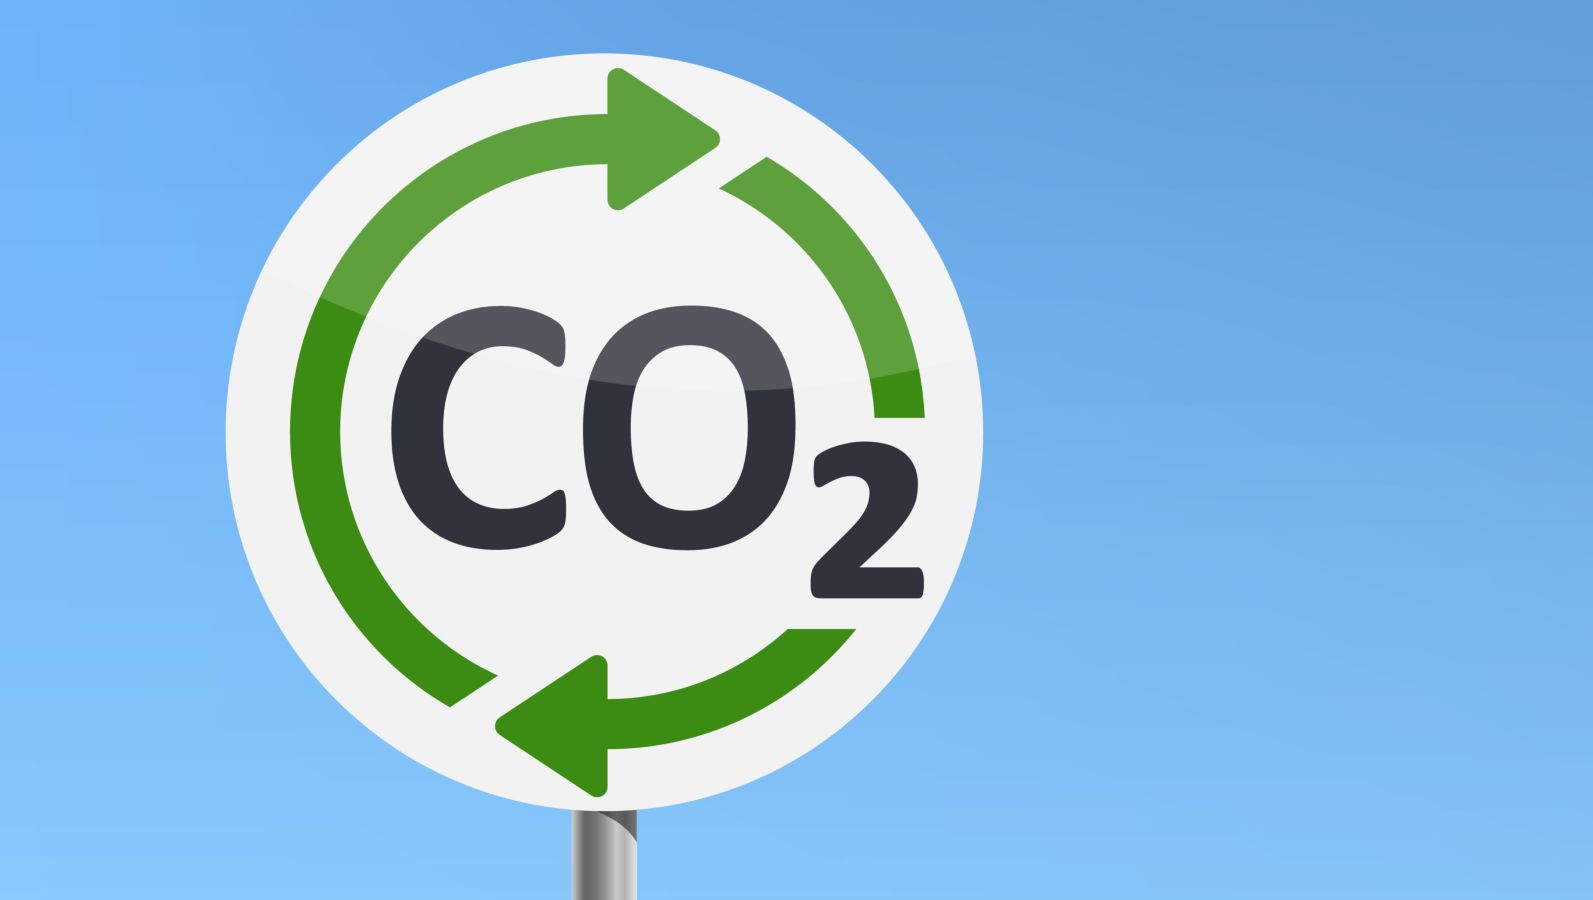 Schild vor blauem Hintergrund mit Symbol CO2-Kreislauf